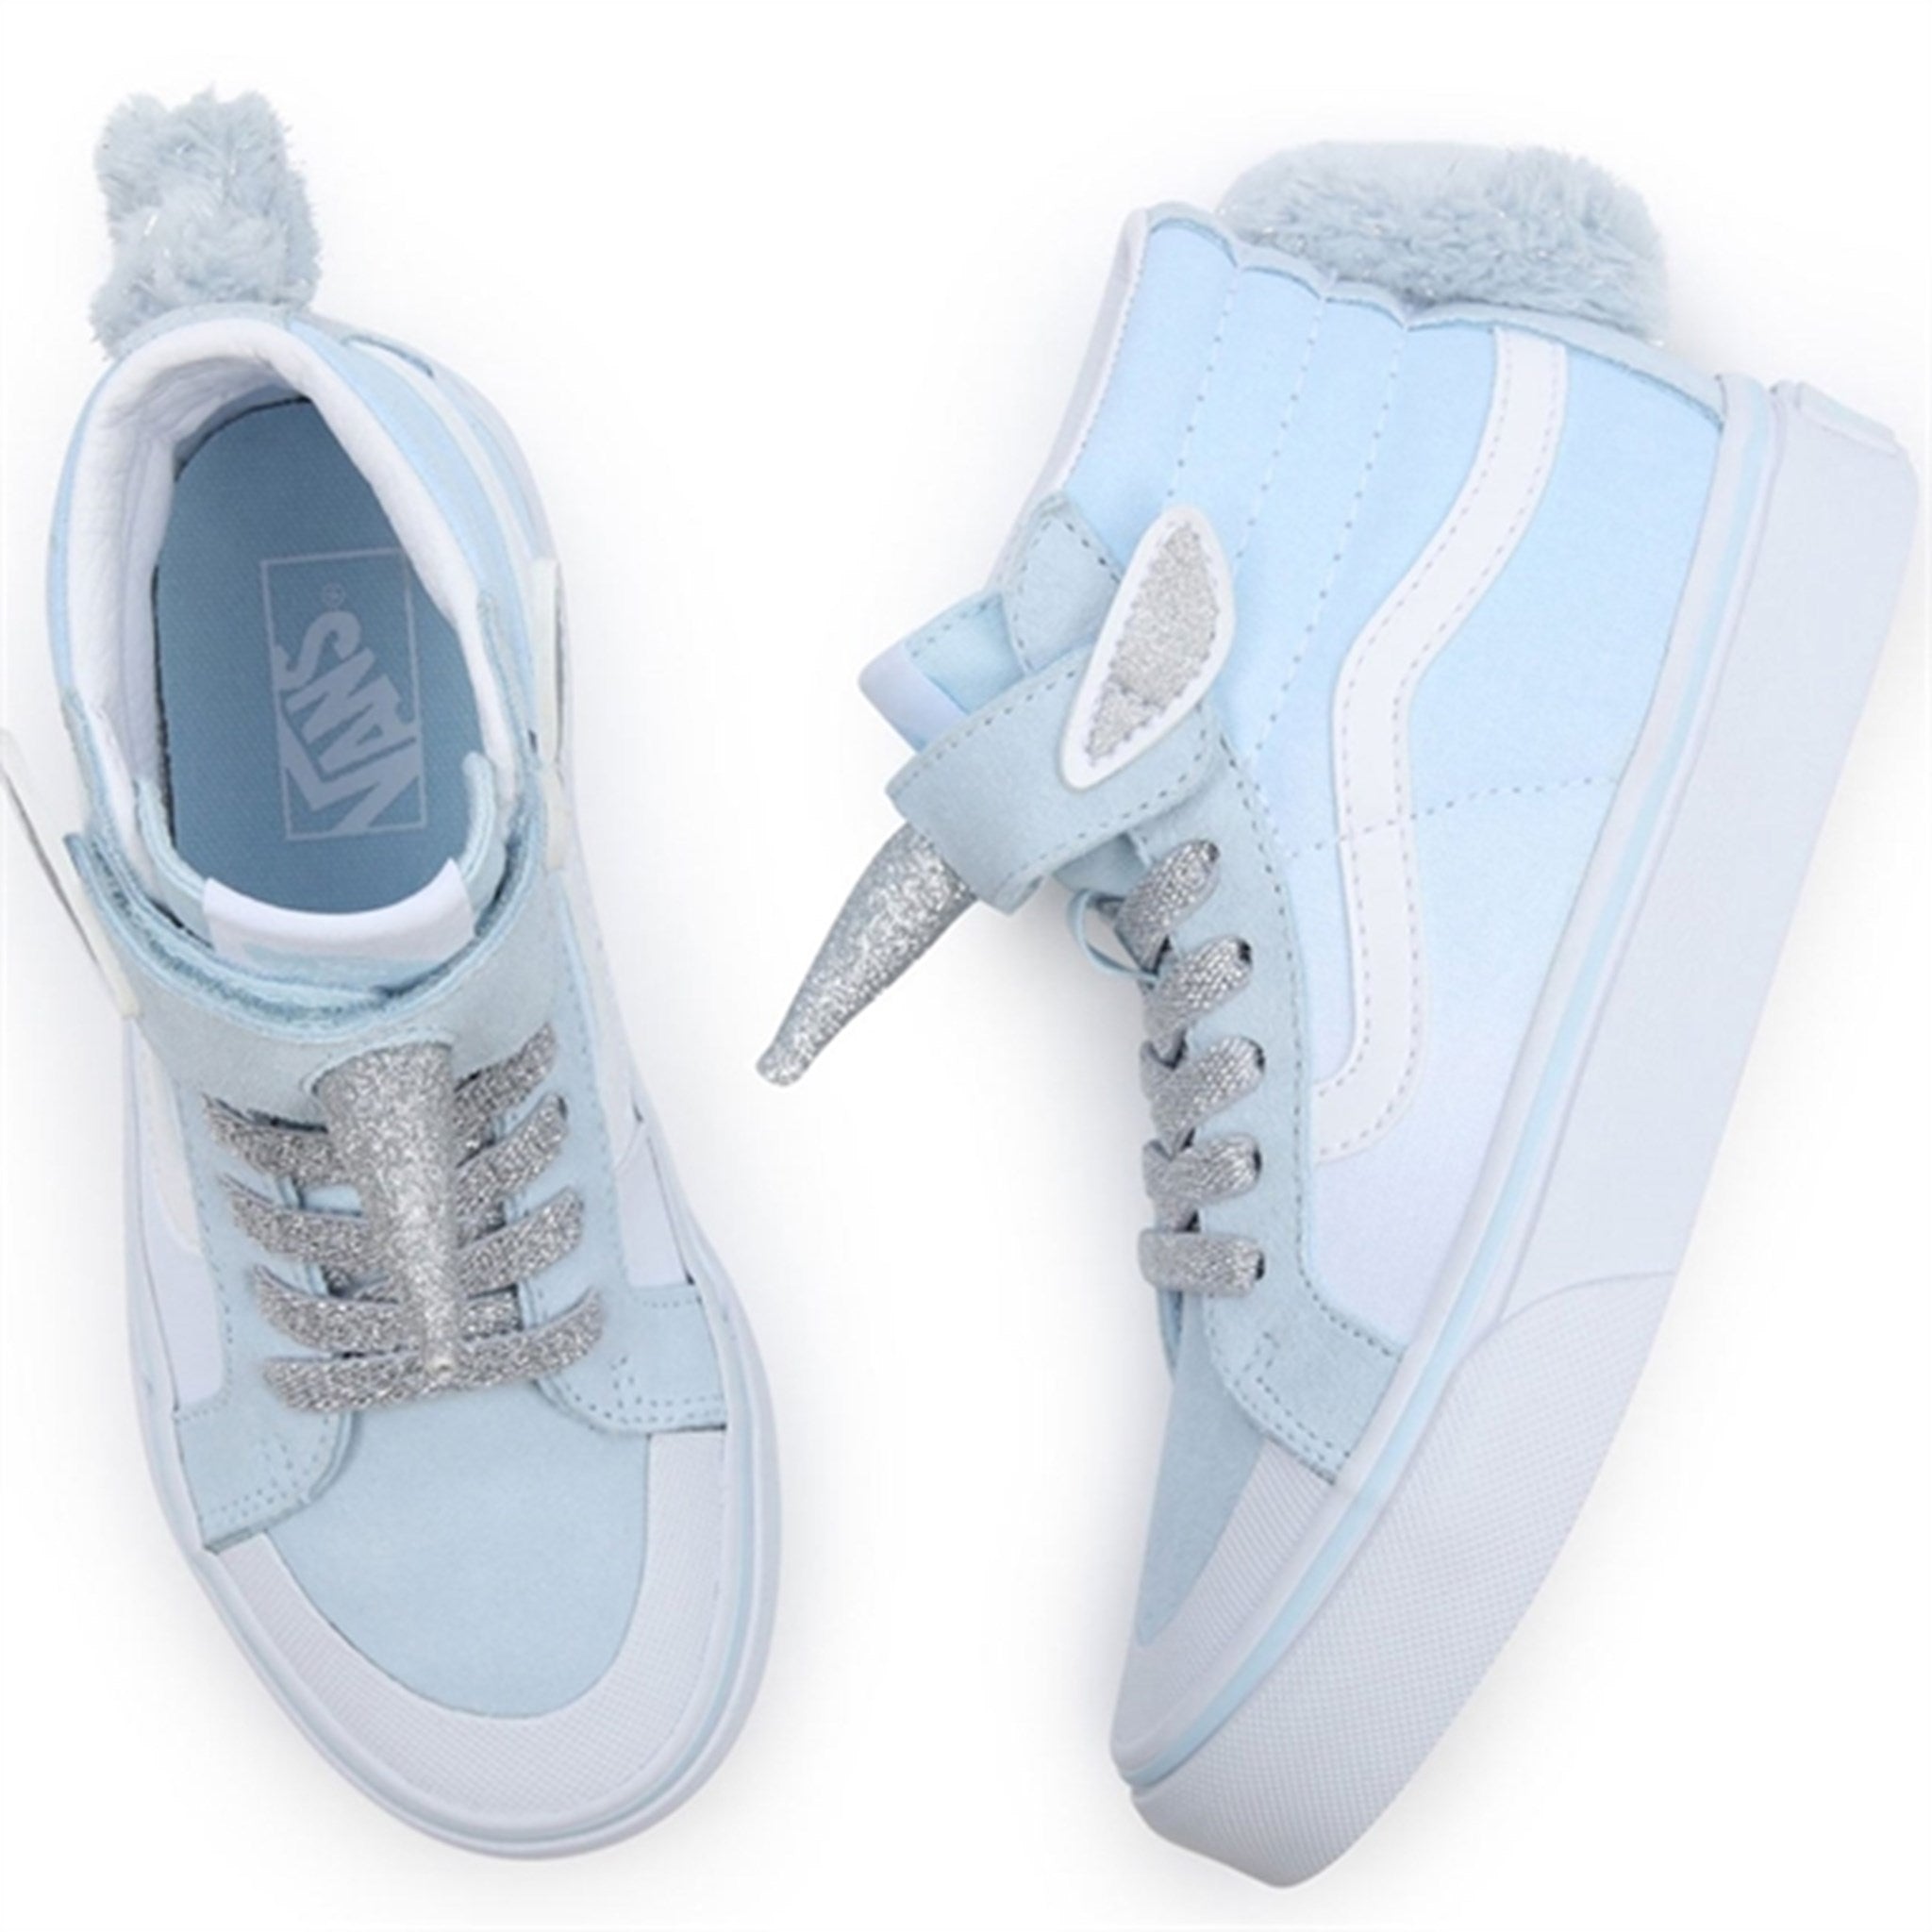 VANS SK8 Hi Unicorn Delicate Blue Silver Shoes 2